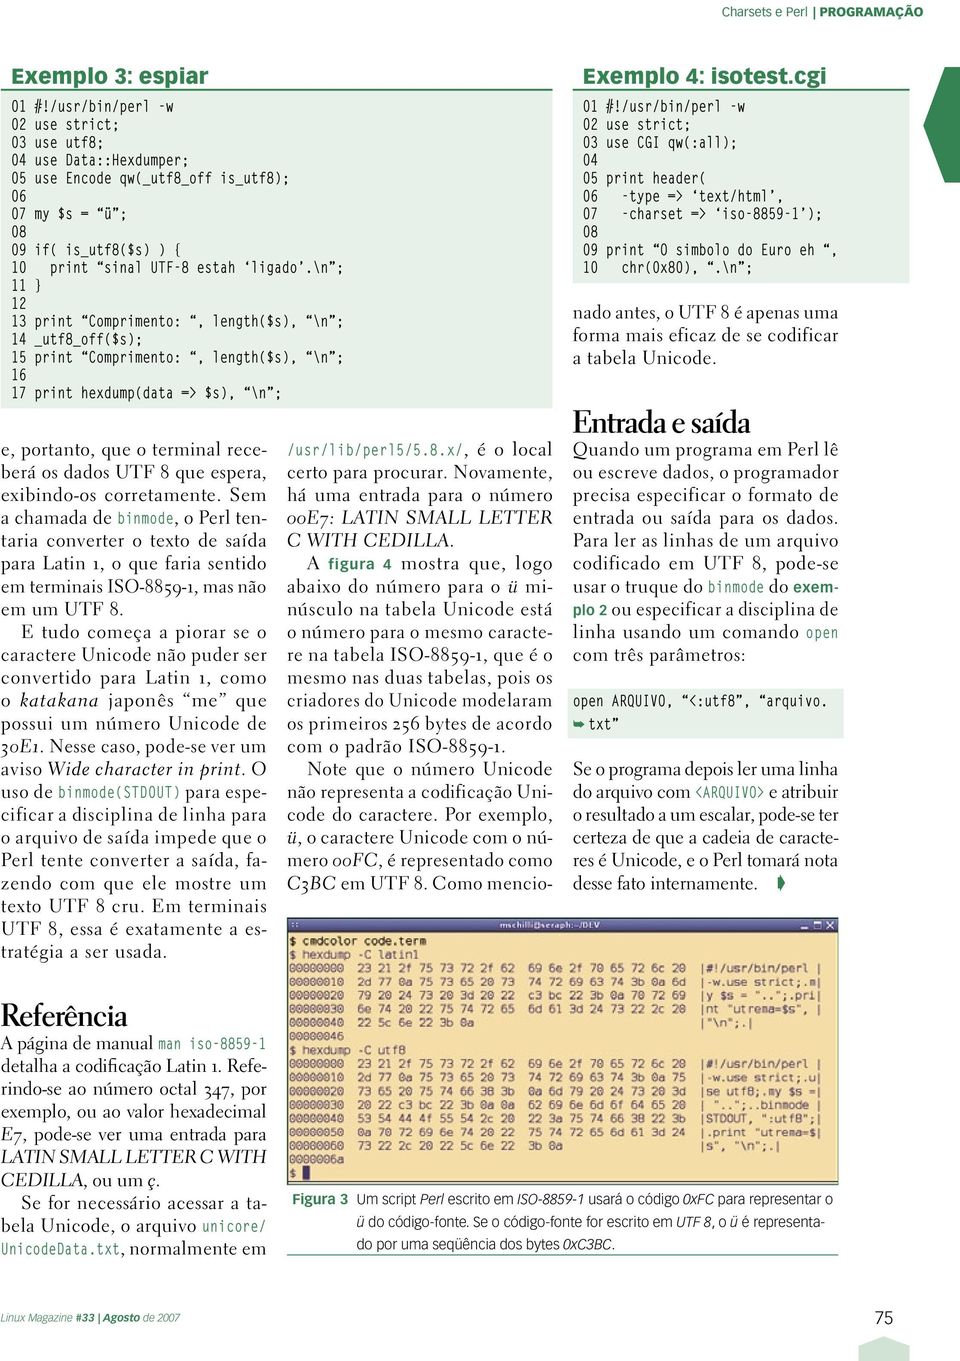 8 que espera, exibindo-os corretamente. Sem a chamada de binmode, o Perl tentaria converter o texto de saída para Latin 1, o que faria sentido em terminais ISO-8859-1, mas não em um UTF 8.